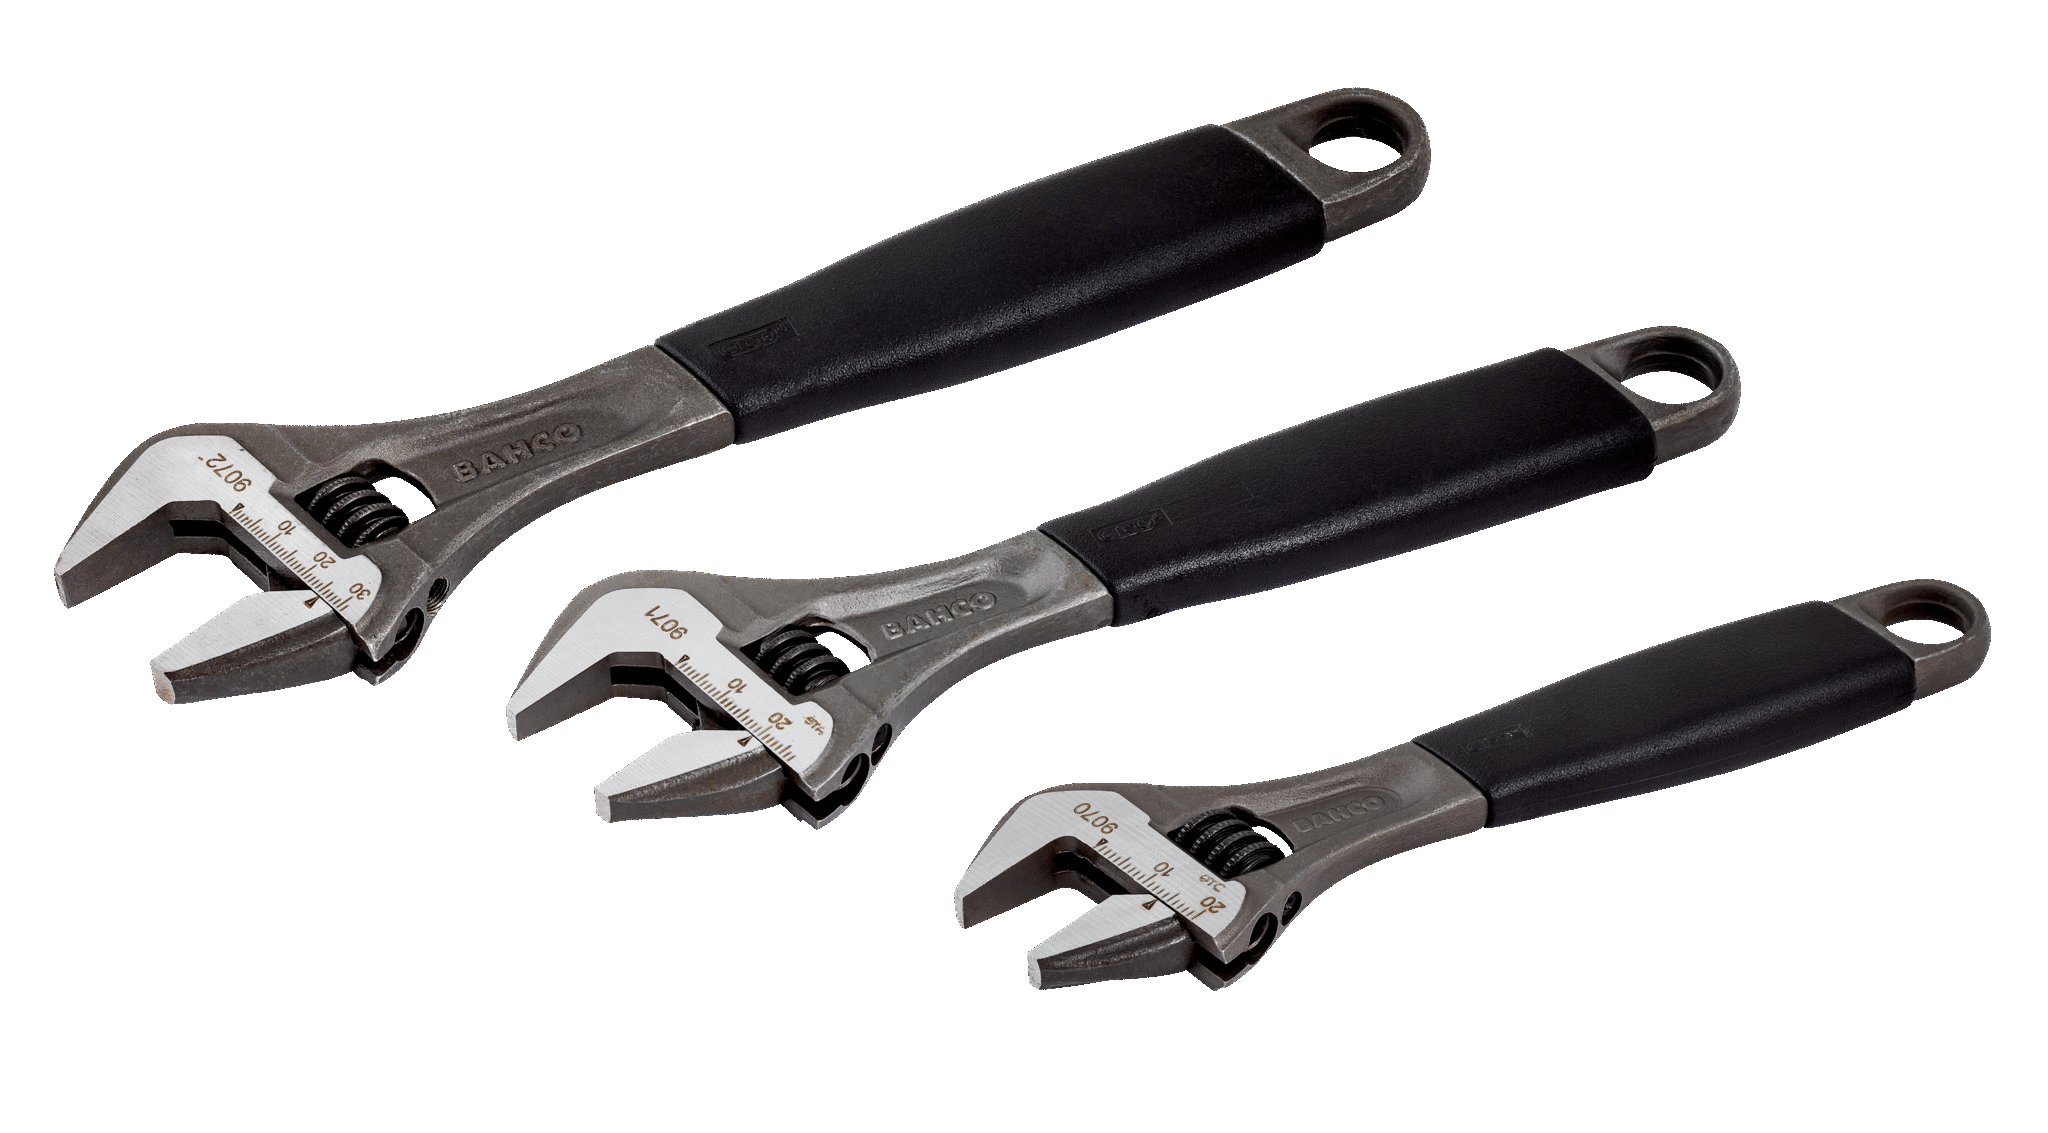 Bacho Plumbers Adjustable Wrench Bahco Ergo 9073-12" Adjustable Wrench 